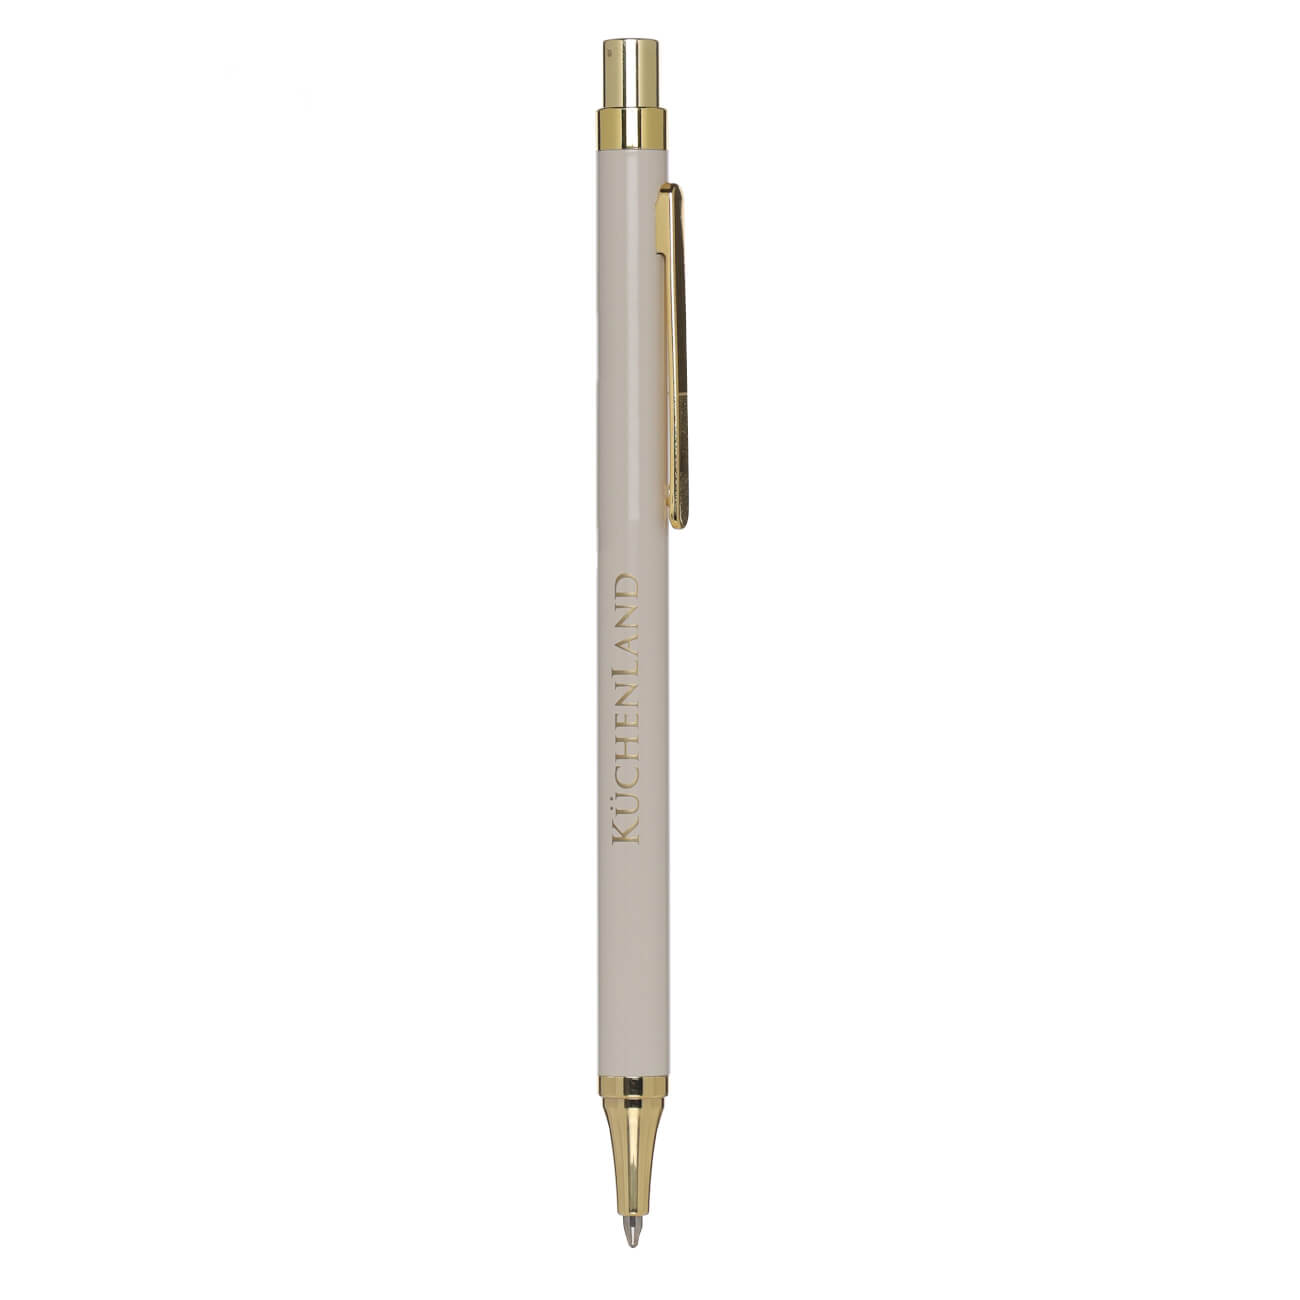 Ручка шариковая, 14 см, металл/пластик, бежевая, Eclipse грабли длина 25 см деревянная ручка